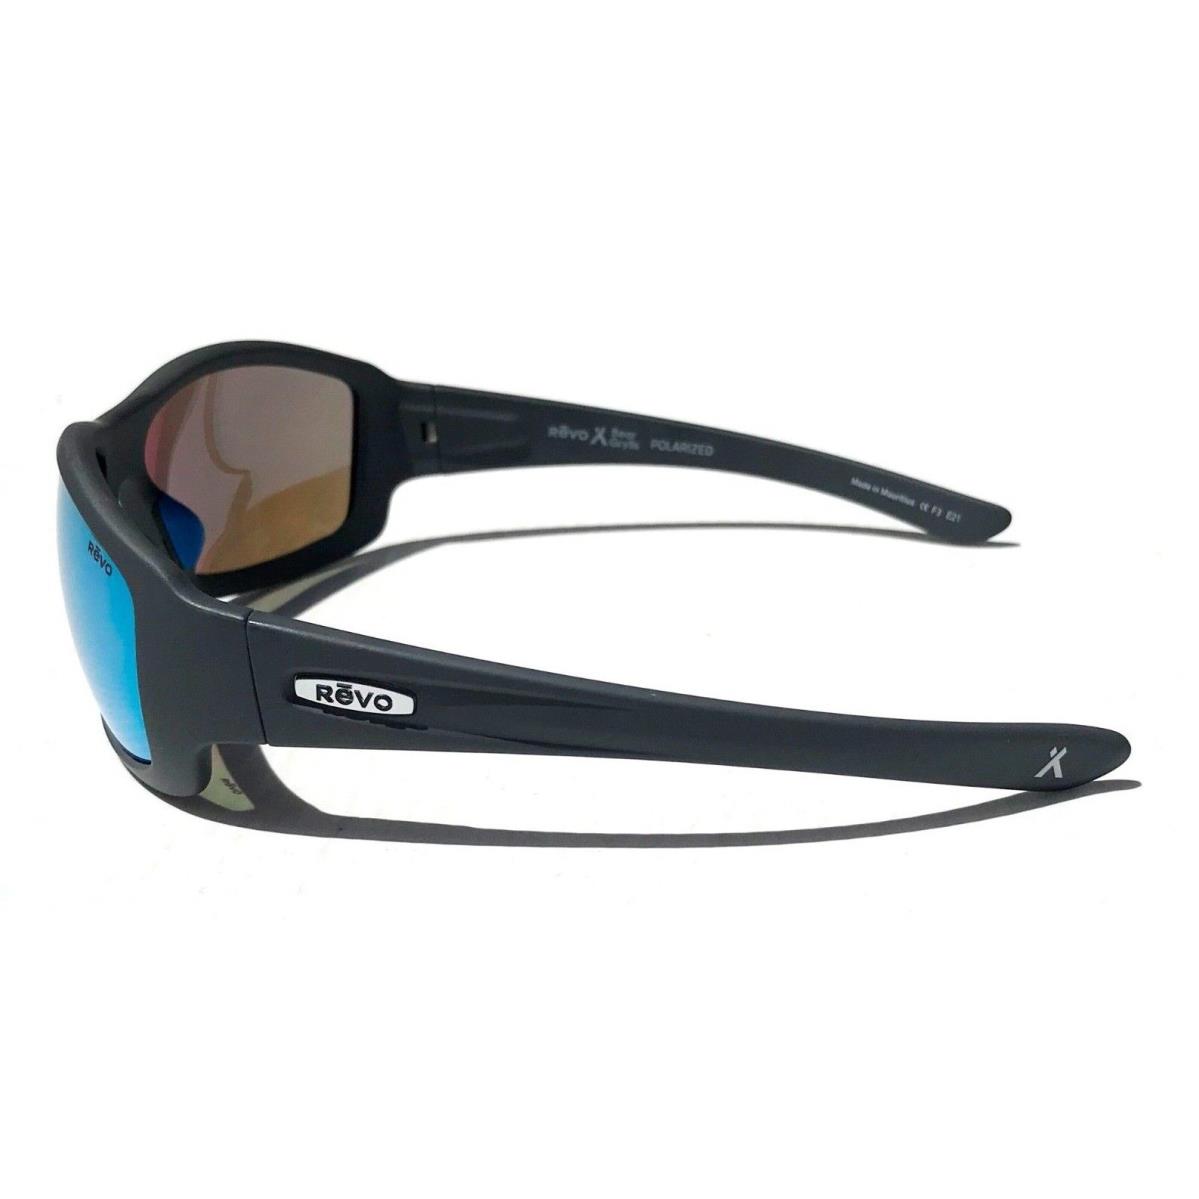 Revo sunglasses MAVERICK - Matte Grey Frame, Blue Lens